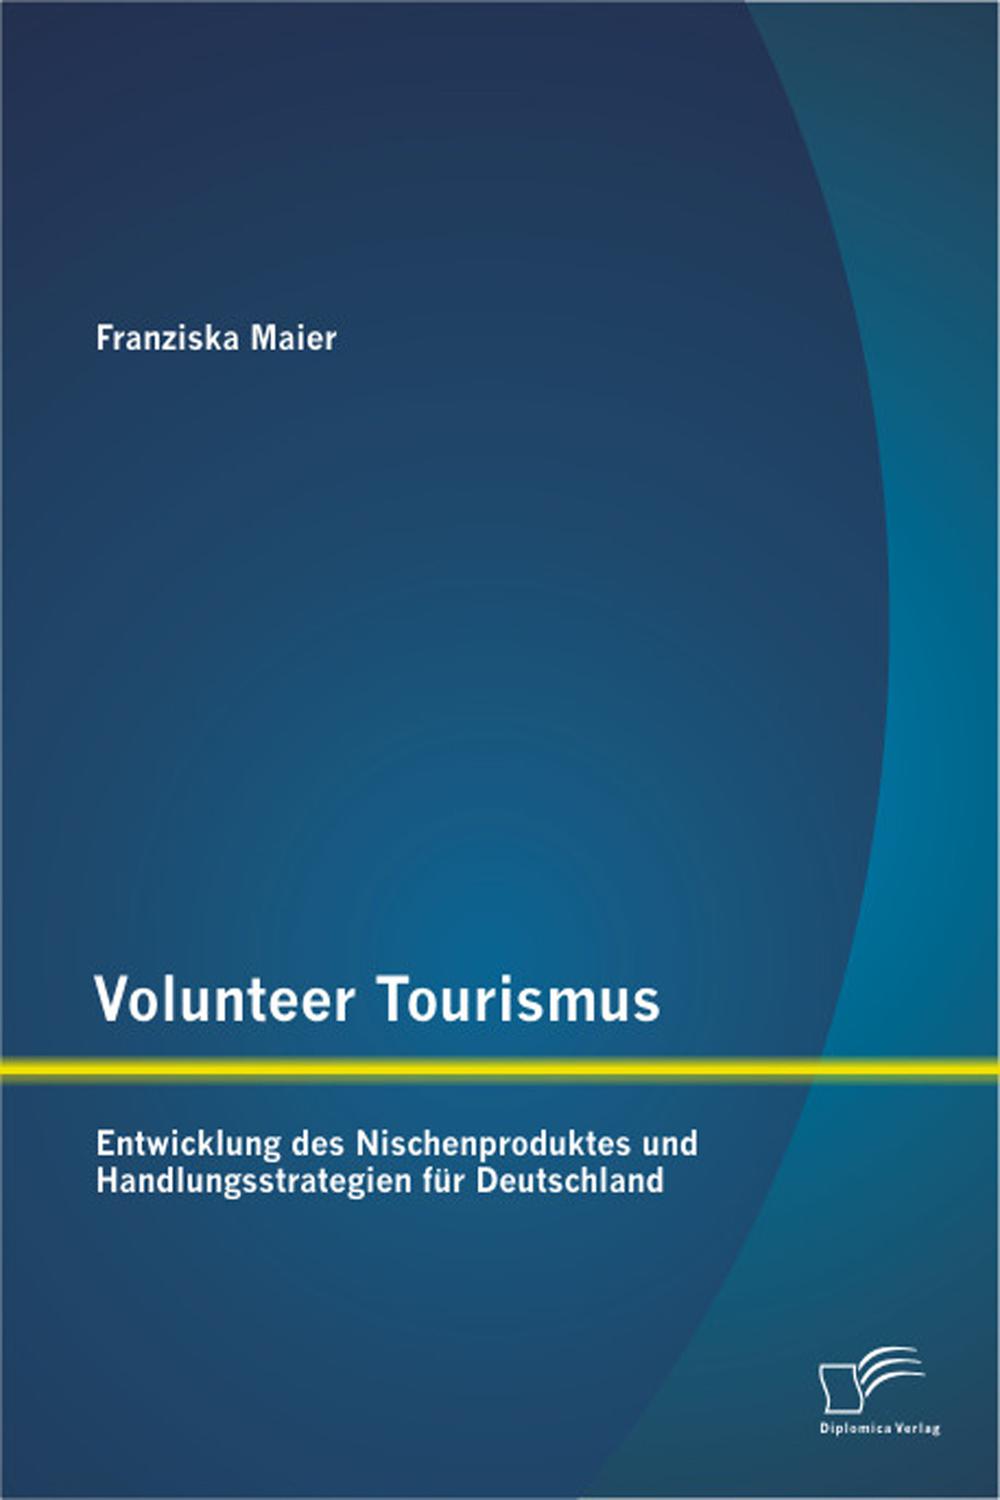 Volunteer Tourismus: Entwicklung des Nischenproduktes und Handlungsstrategien für Deutschland - Franziska Maier